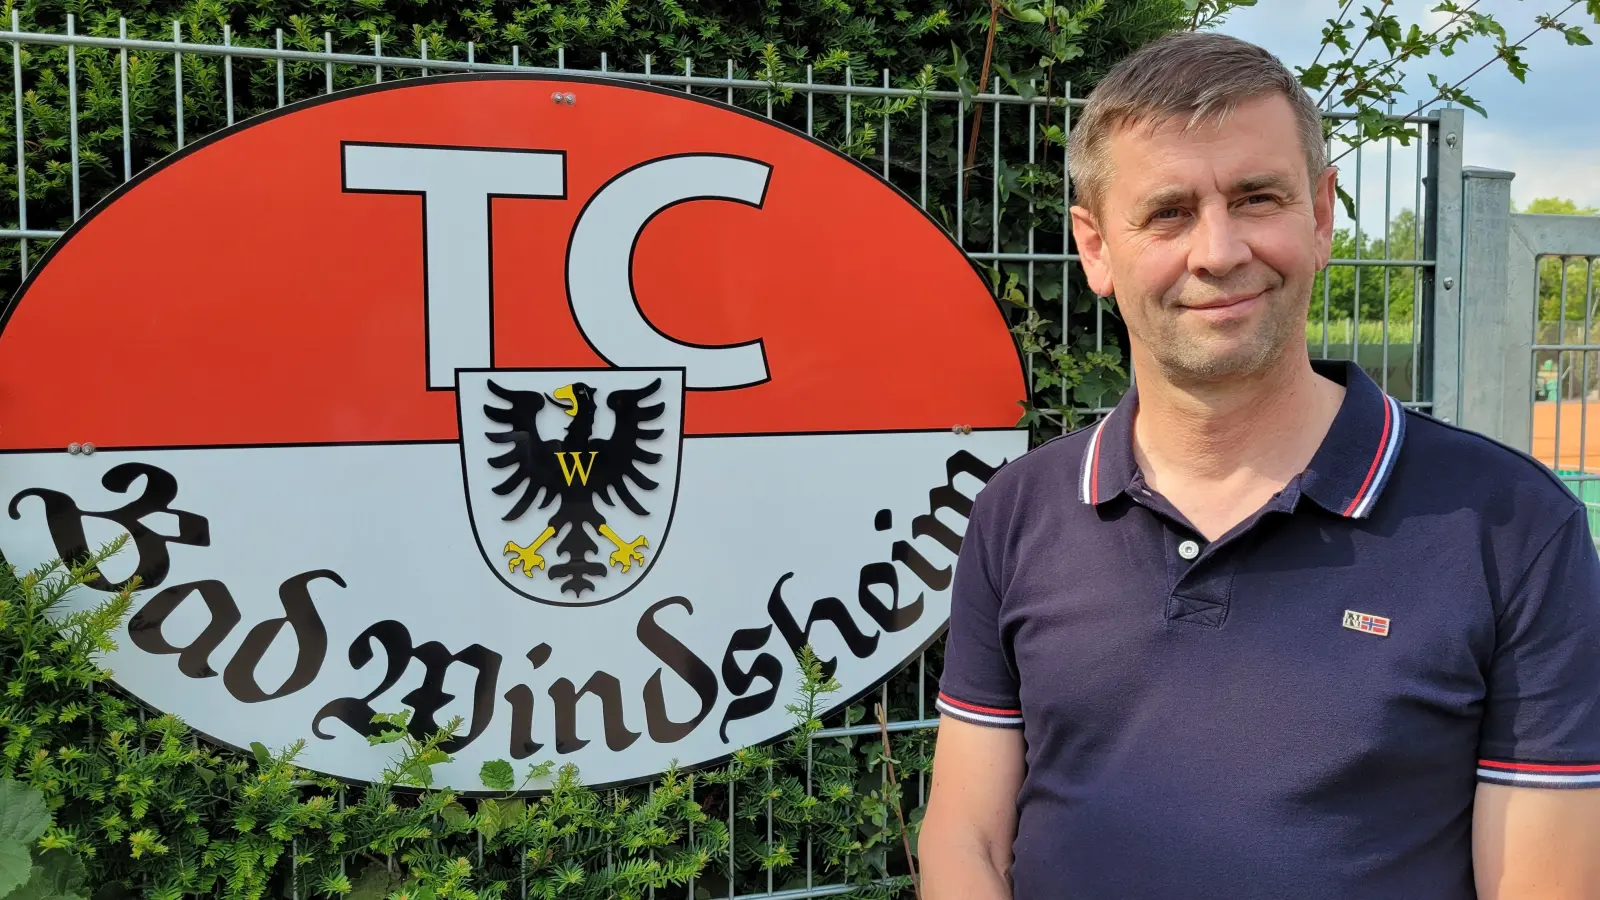 Frank Jäger ist Vorsitzender des Tennis-Clubs in Bad Windsheim und freut sich auf das einzigartige Jubiläumsfest, das auf der Anlage und im Clubhaus gefeiert wird. (Foto: Nina Daebel)